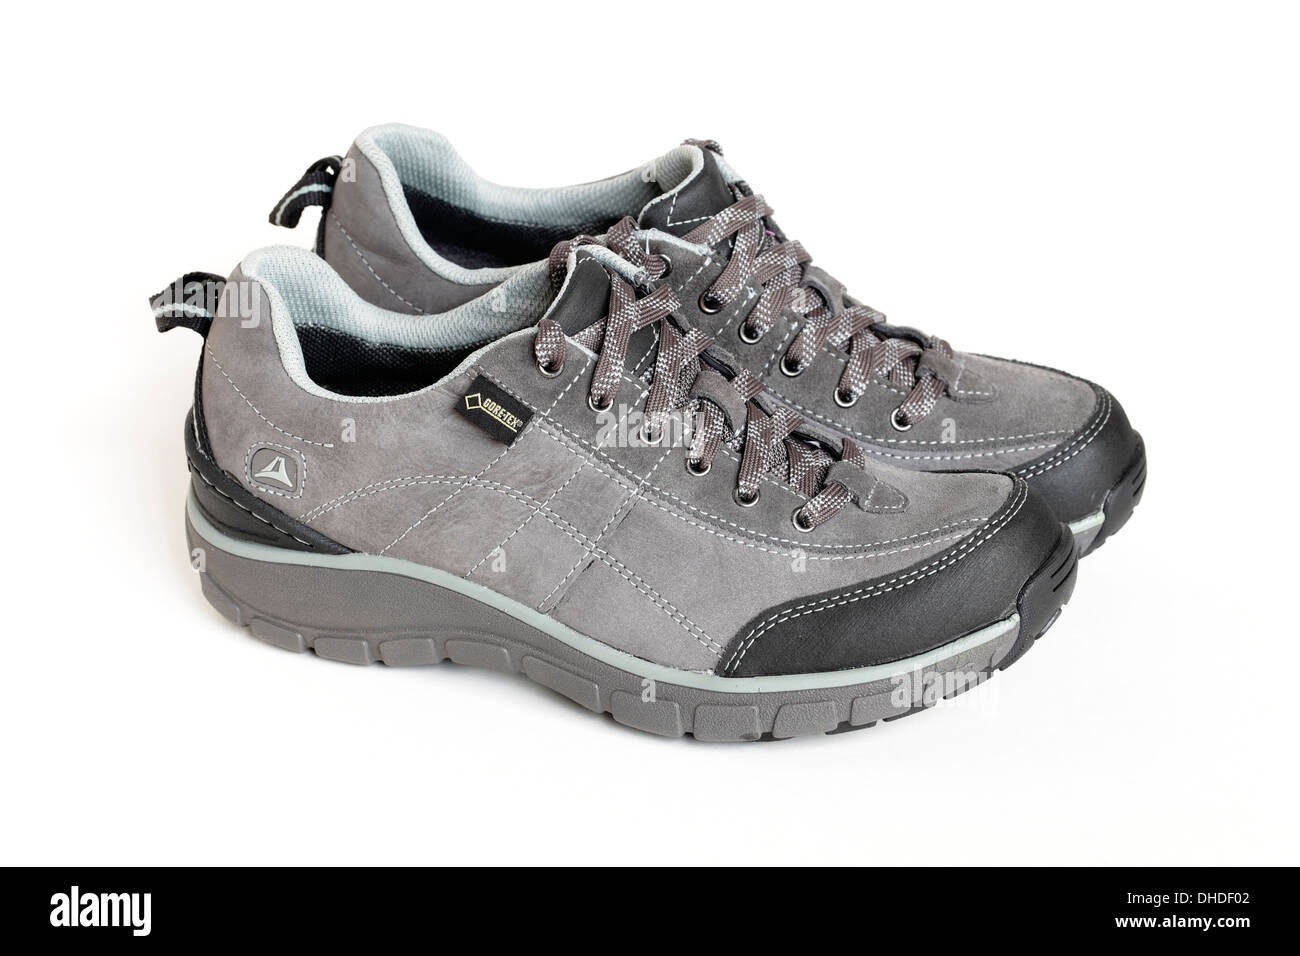 Un nuovo e pulito paio di scarpe da passeggio GTX grigie Clarks Wave Trail da donna isolate su sfondo bianco, Regno Unito Foto Stock